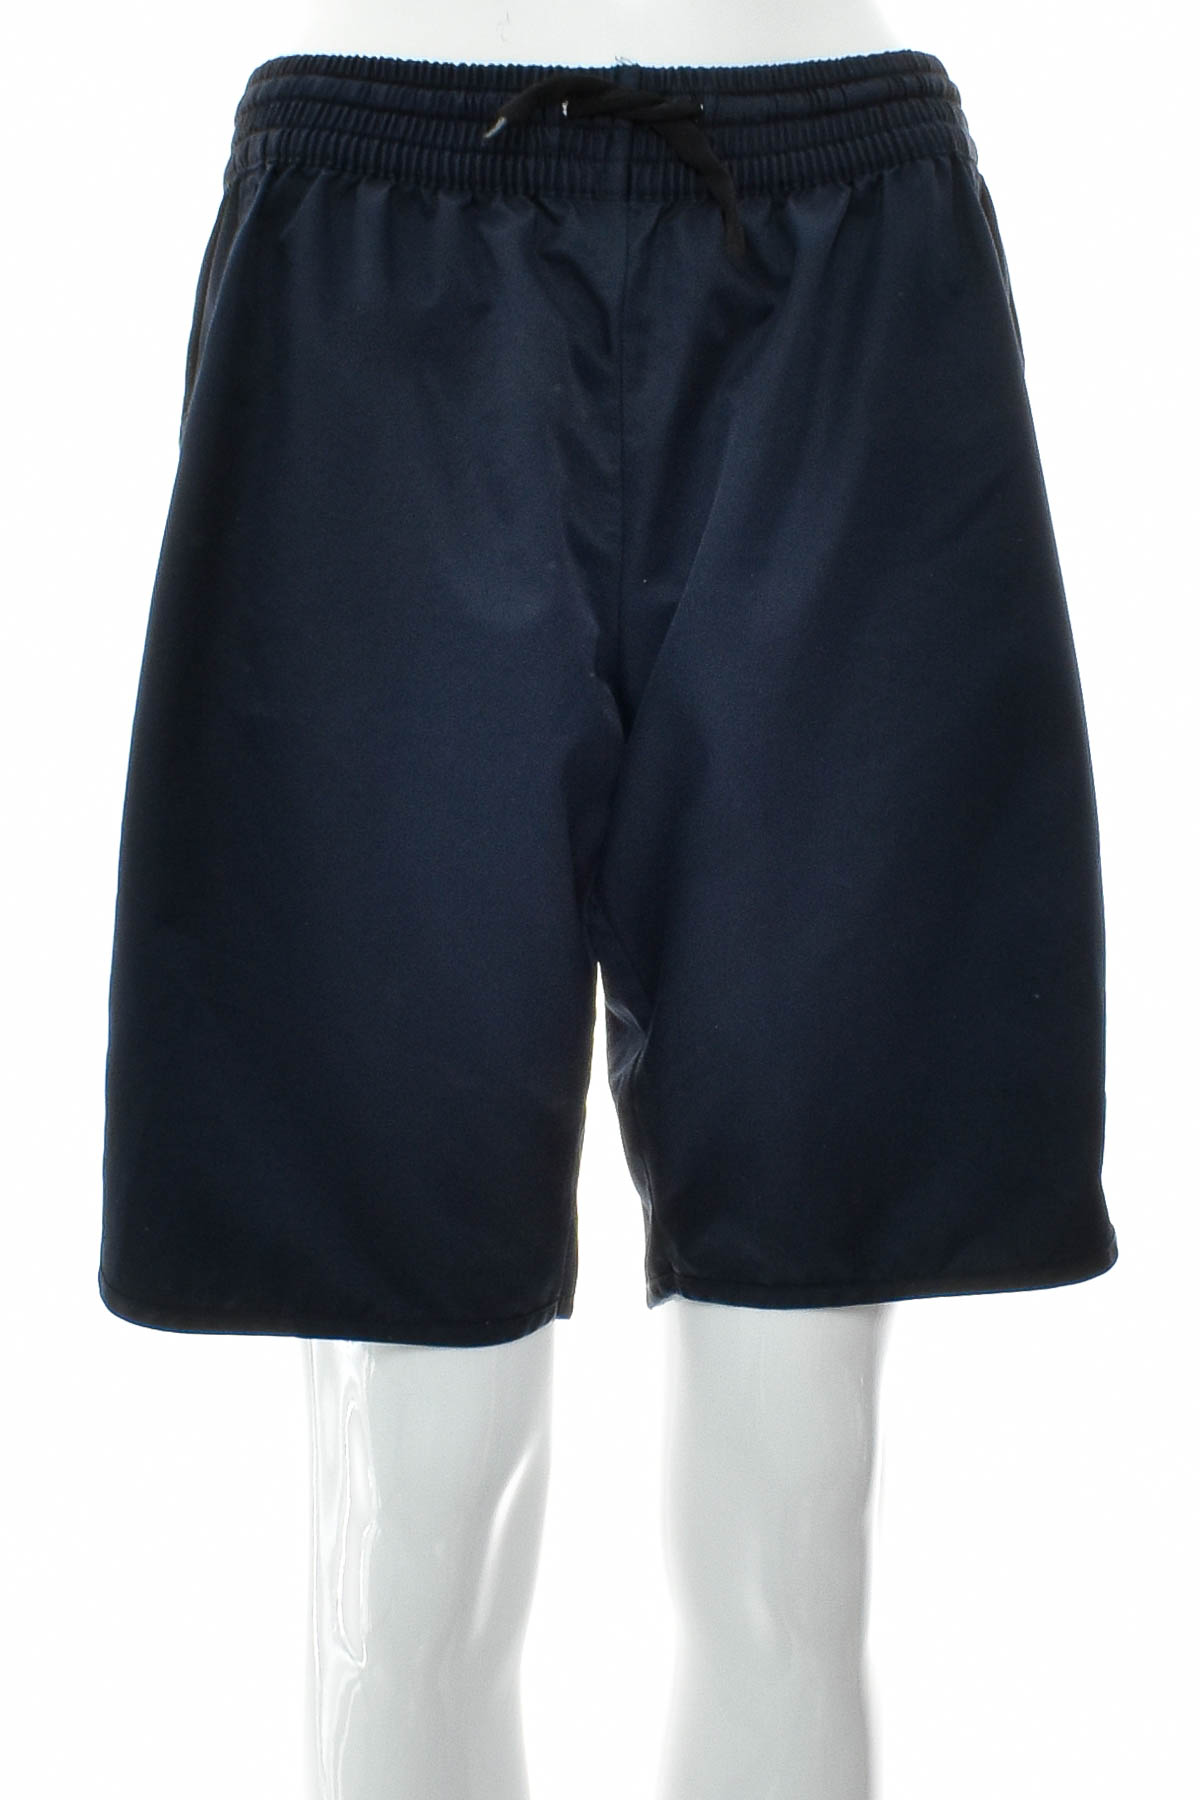 Women's shorts - Naypes - 0